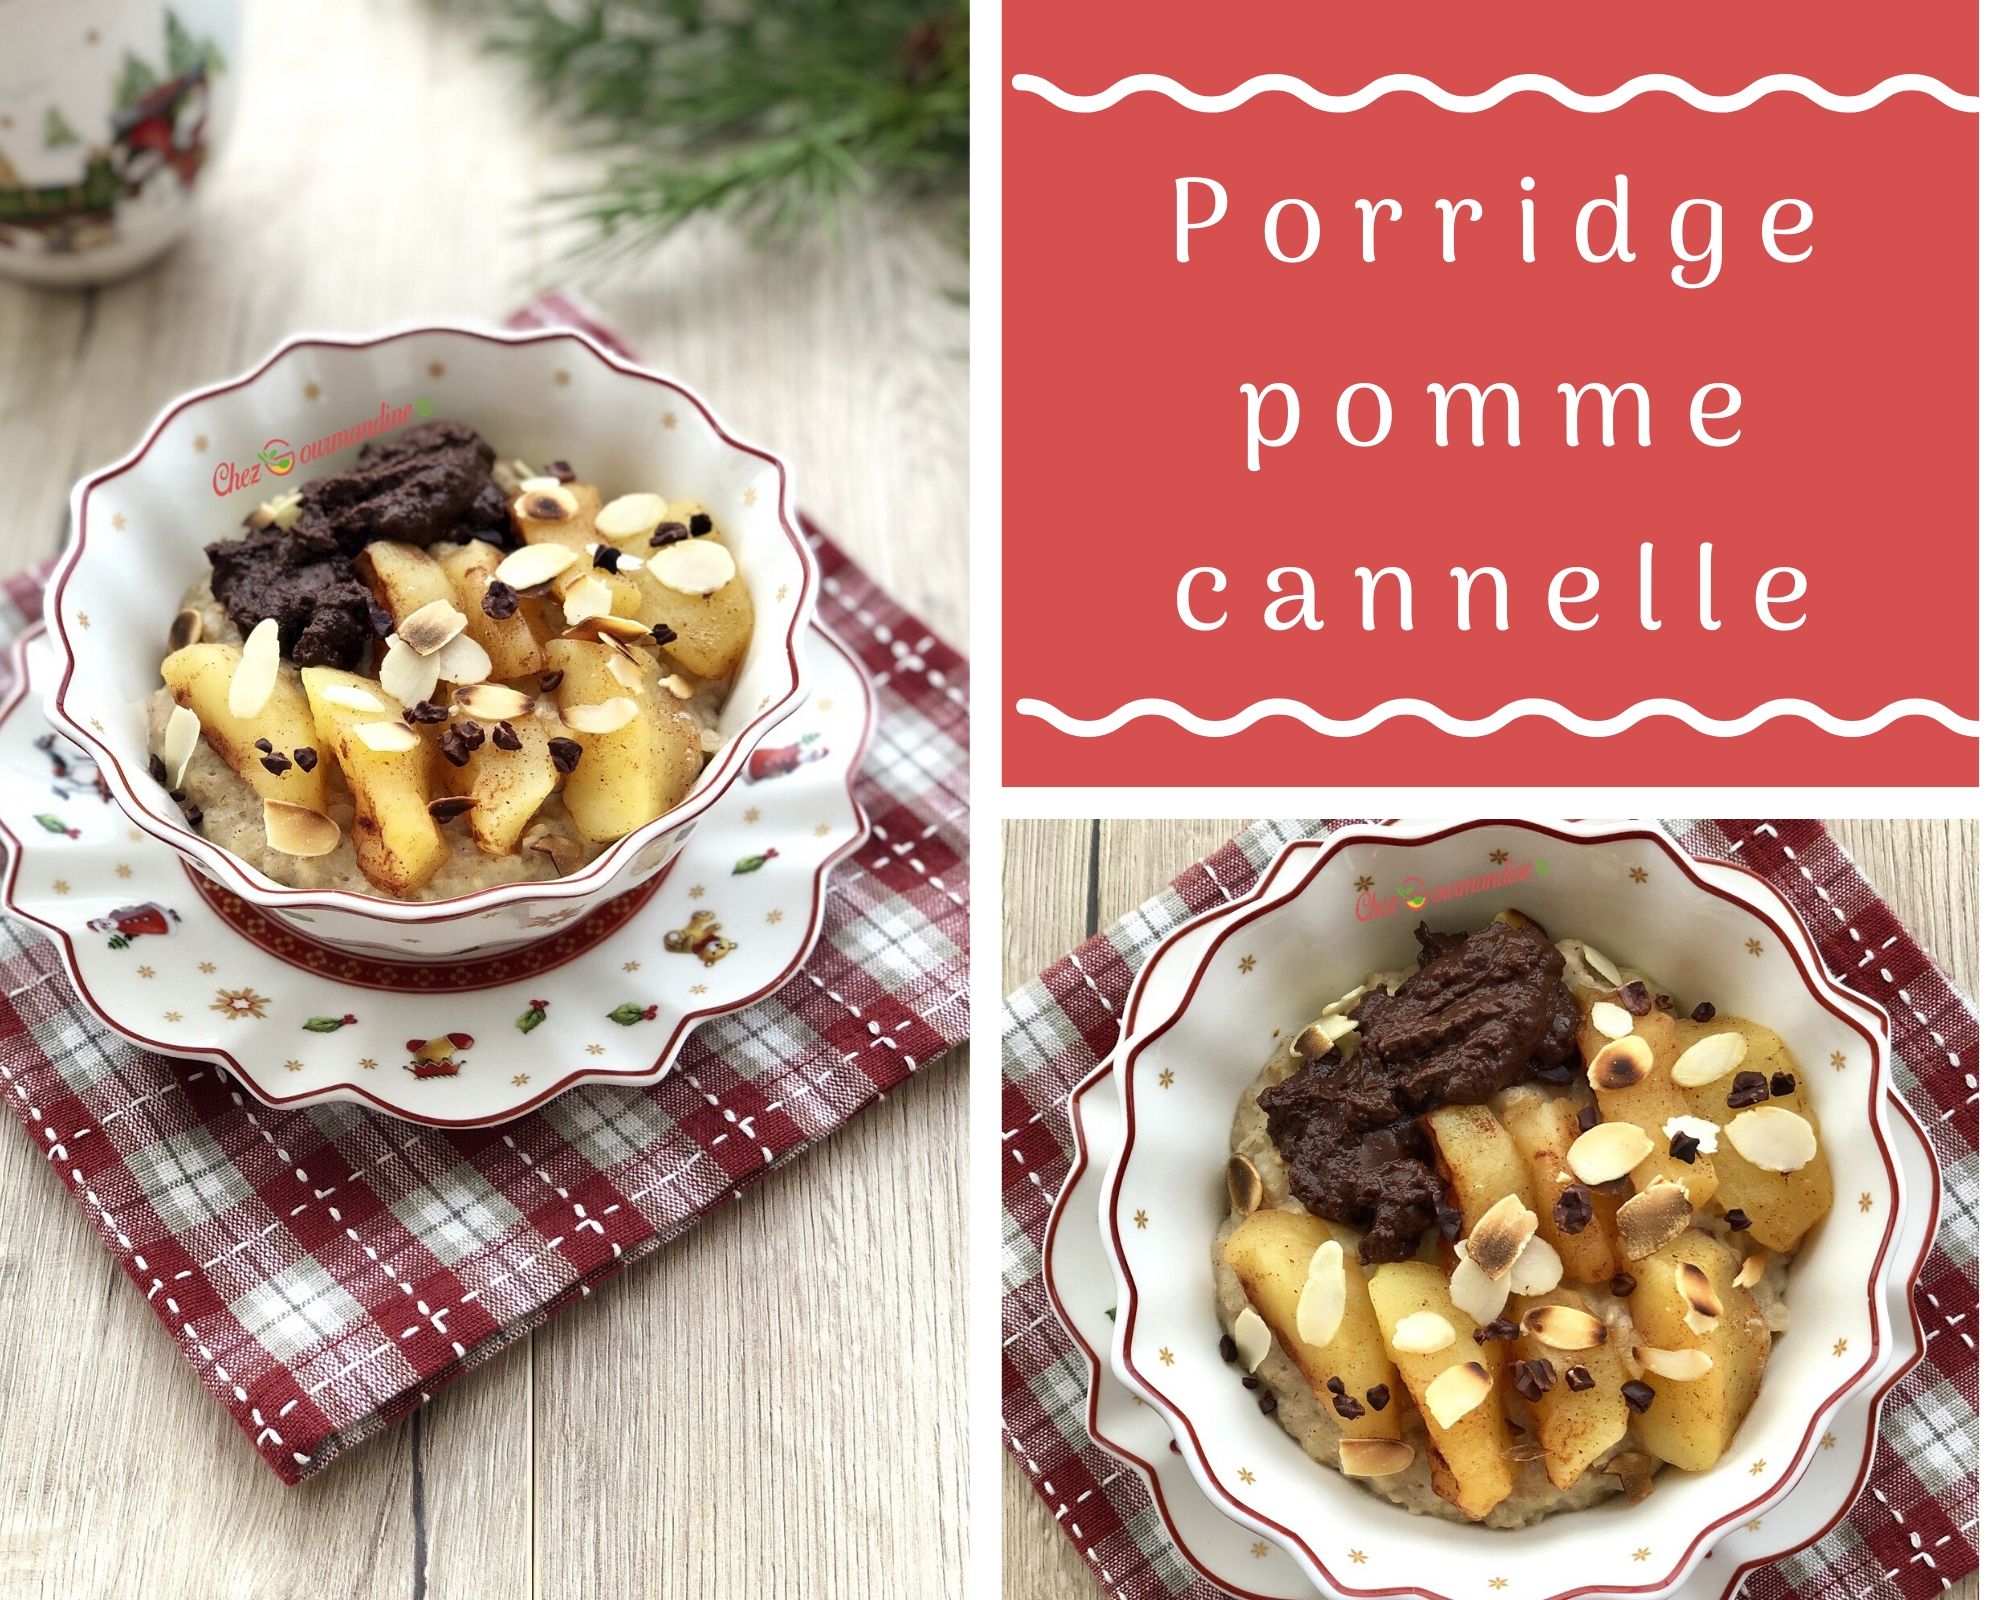 Porridge pomme cannelle